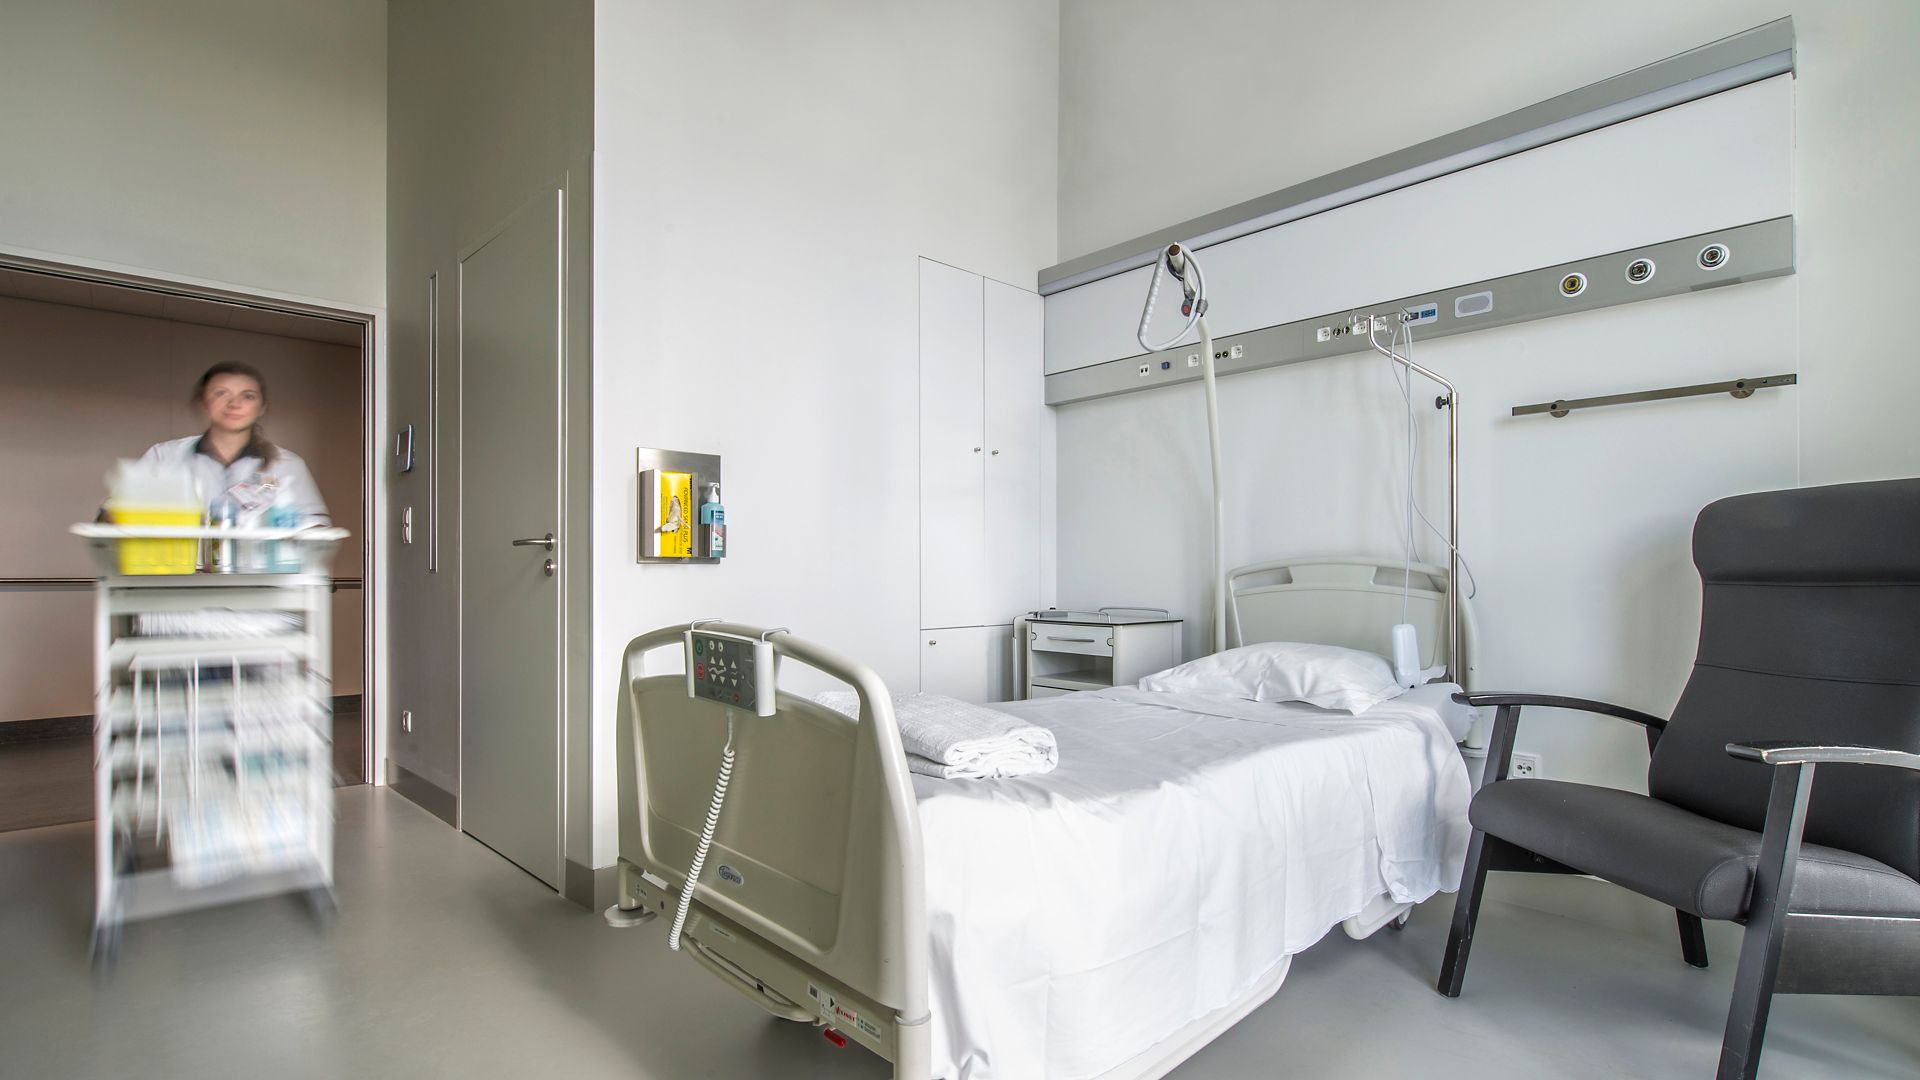 Single-bed room in AZ Groeninge Hospital in Kortrijk Belgium